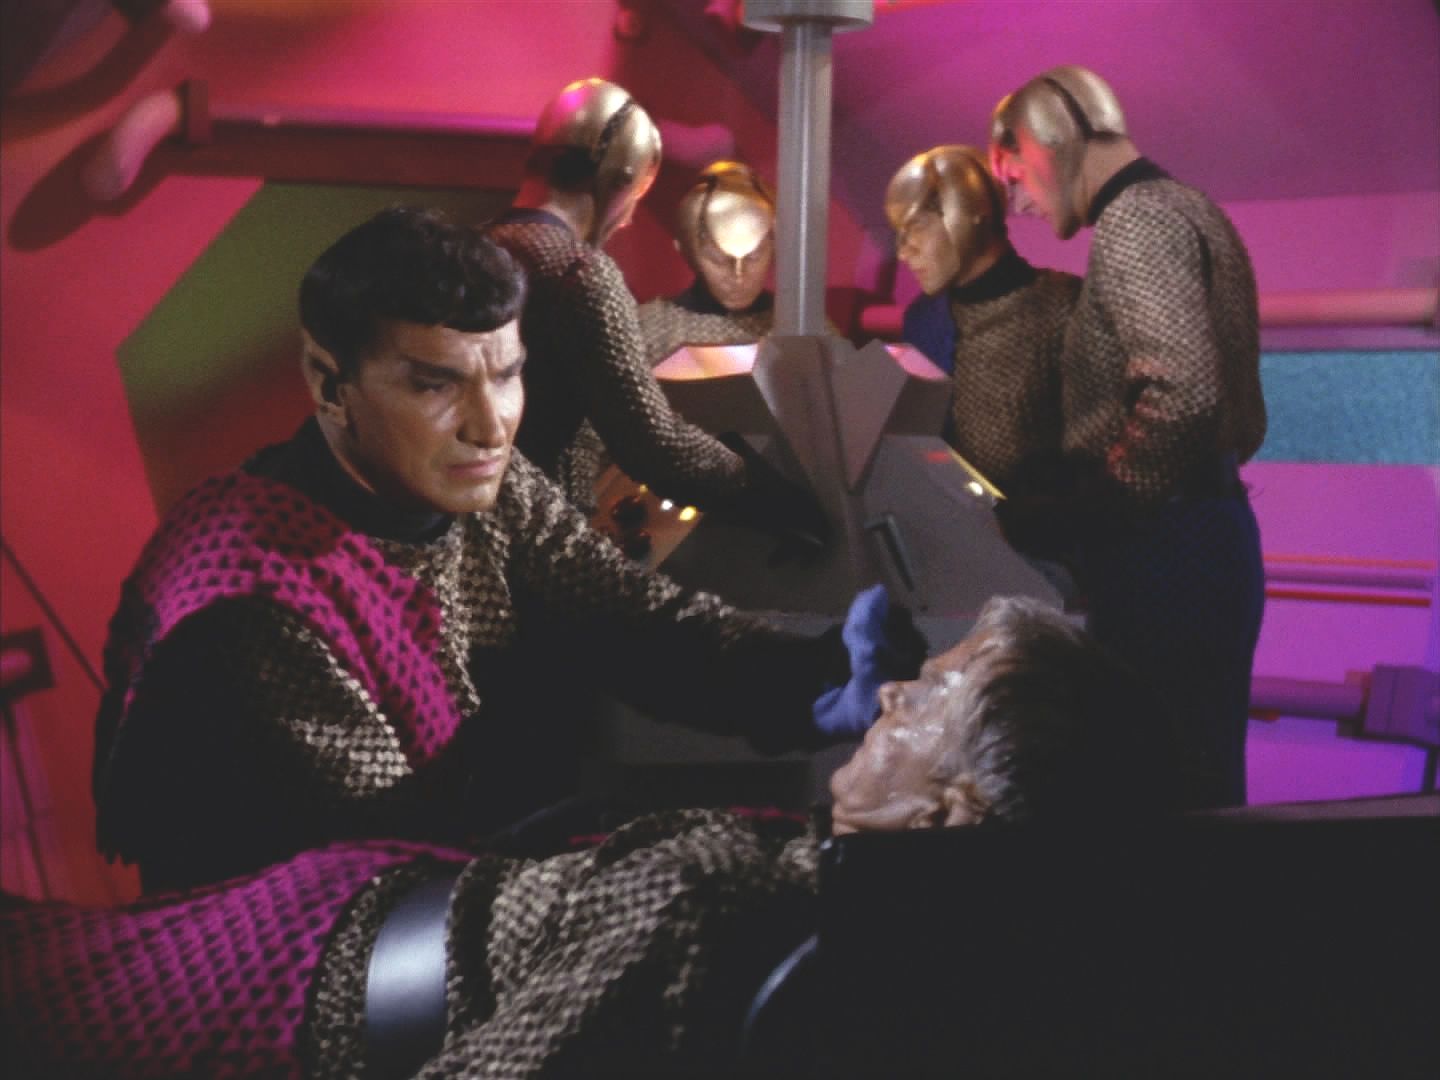 Pak začíná hra nervů. Romulanský komandér sice při zásahu ztratil svého dobrého přítele, ale je stejně dobrý stratég jako kapitán Kirk.